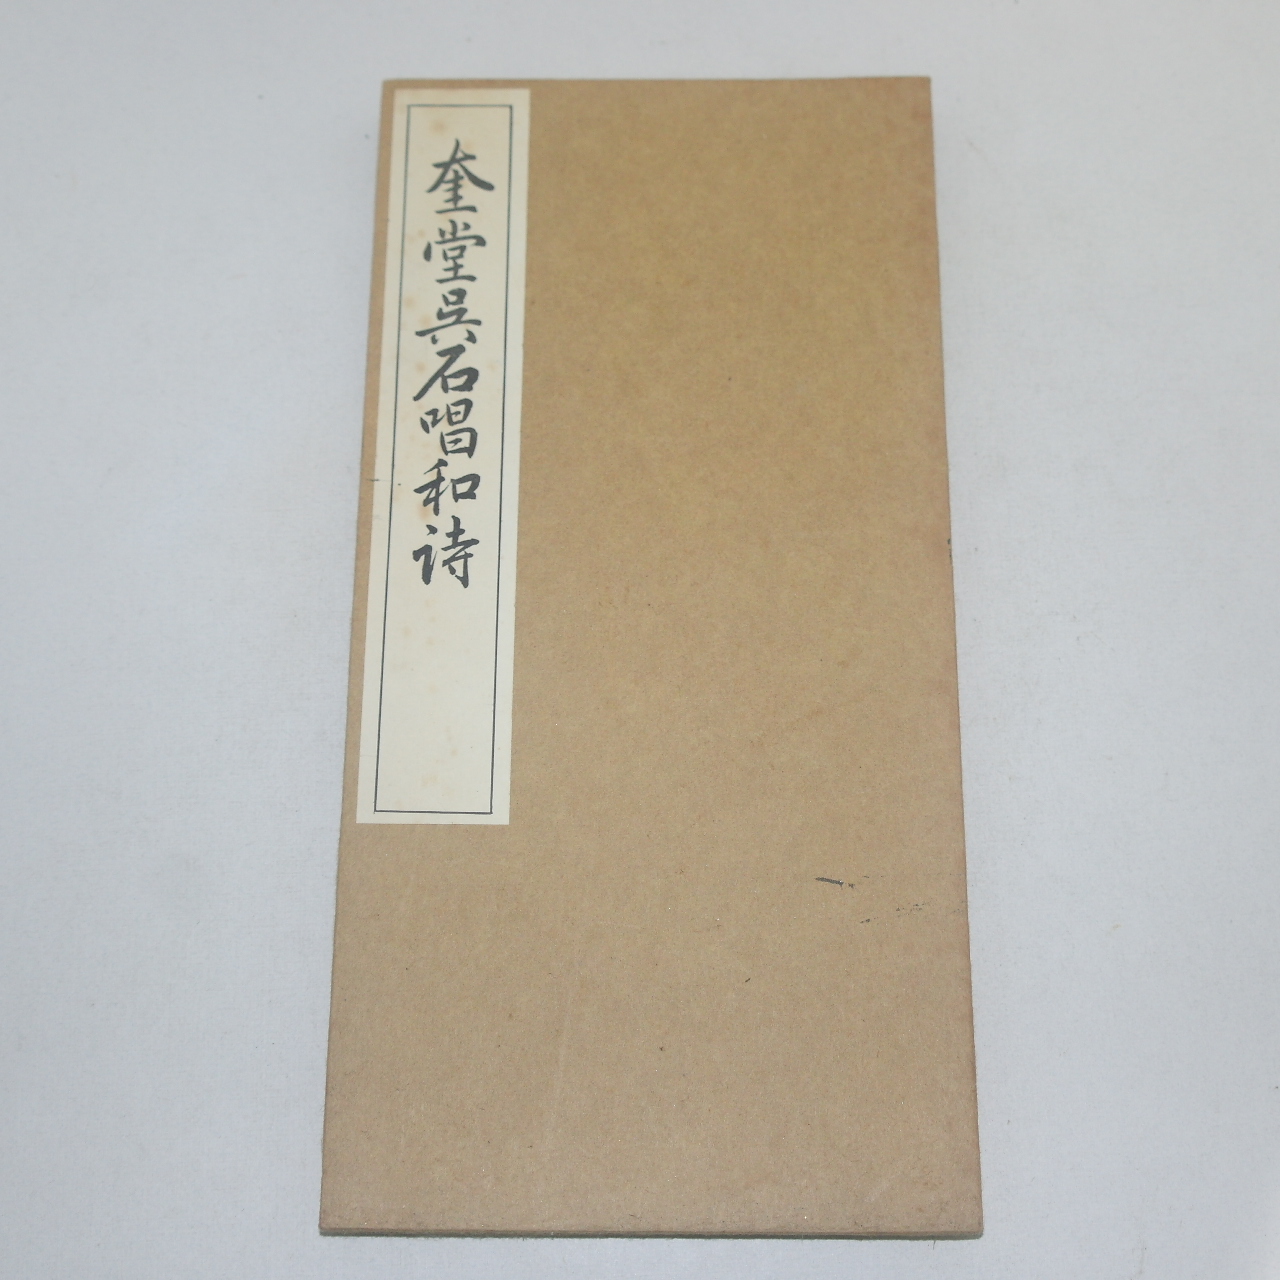 1968년(소화43년) 일본간행 절첩본 규당오석창화시(奎堂吳石唱和詩)